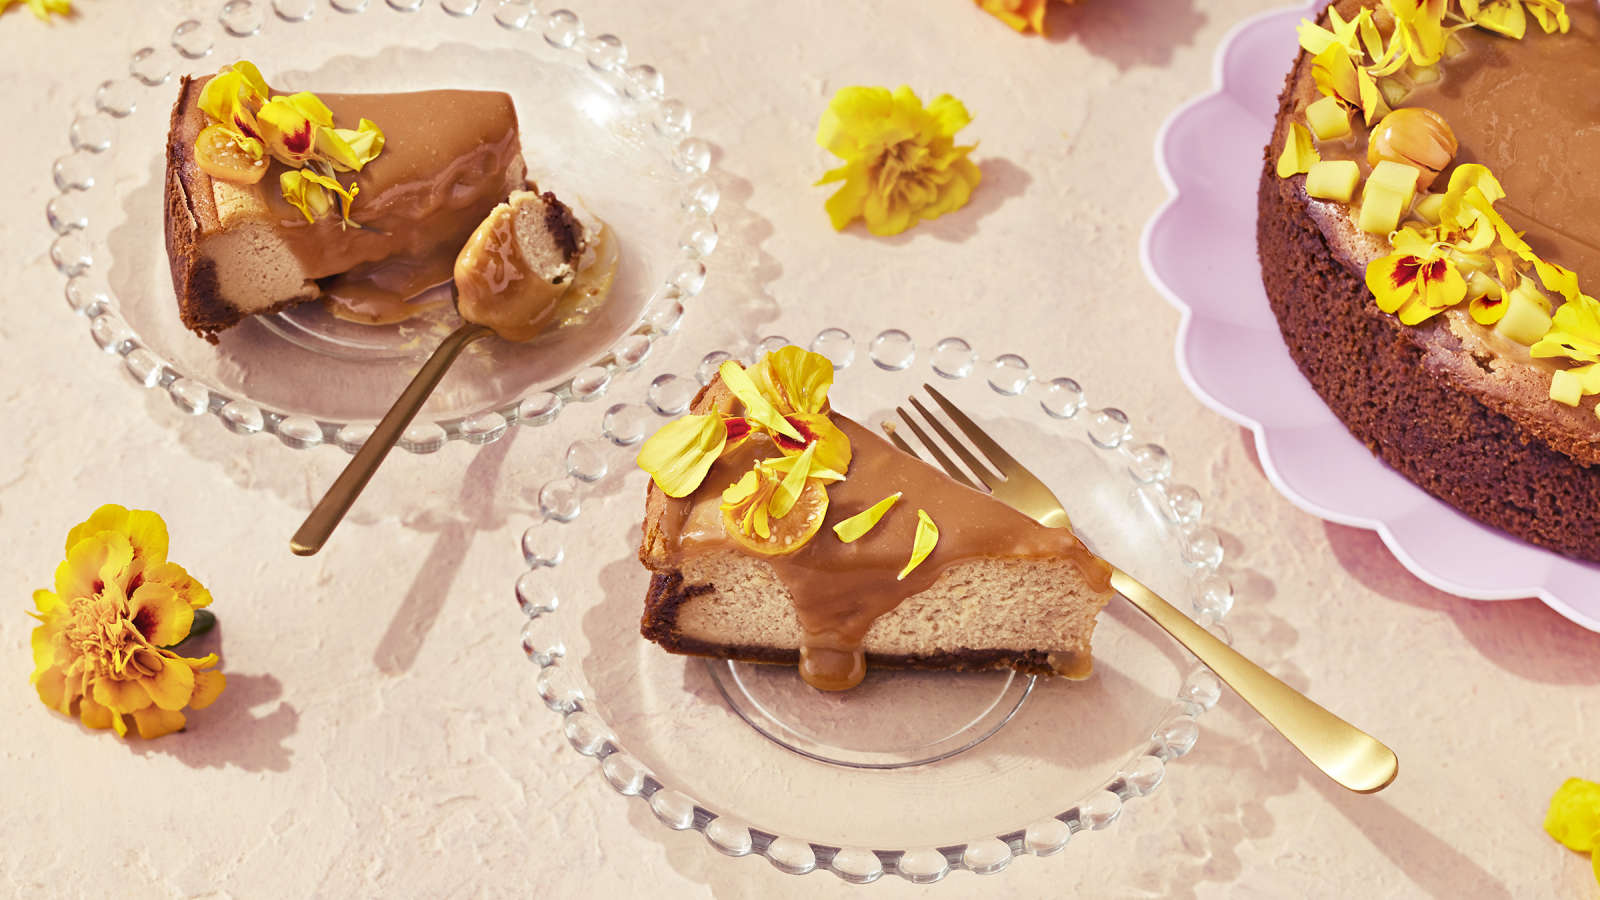 Suolakinuski-juustokakku, josta leikattu kaksi palaa lasisille lautasille. Kakkupalat koristeltu keltaisilla samettikukilla.